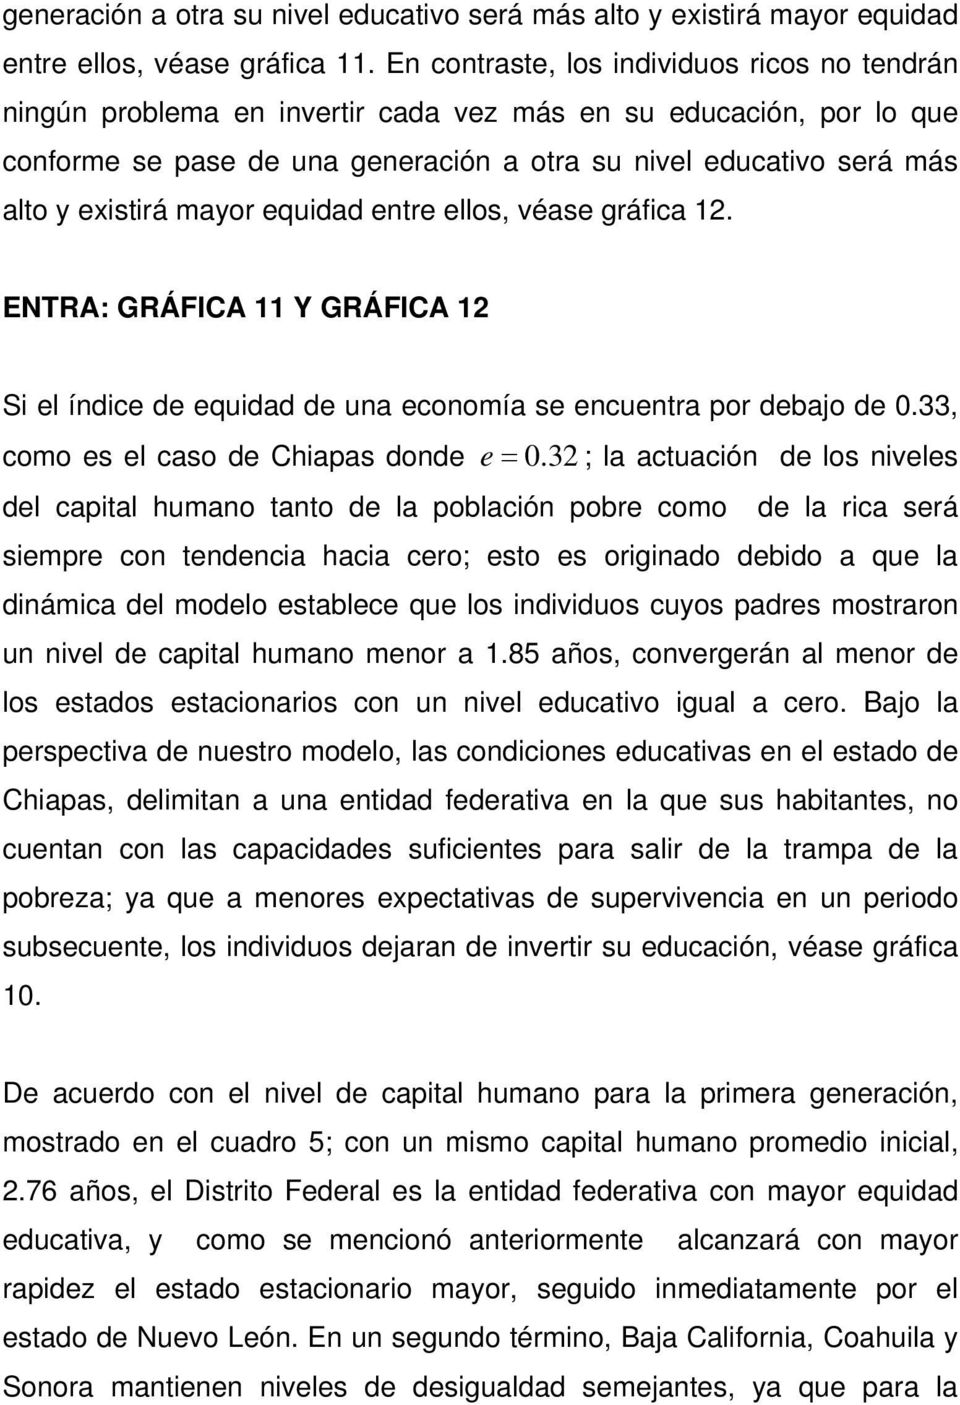 equidad enre ellos, véase gráfica 12. ENTRA: GRÁFICA 11 Y GRÁFICA 12 Si el índice de equidad de una economía se encuenra por debajo de 0.33, como es el caso de Chiapas donde e 0.